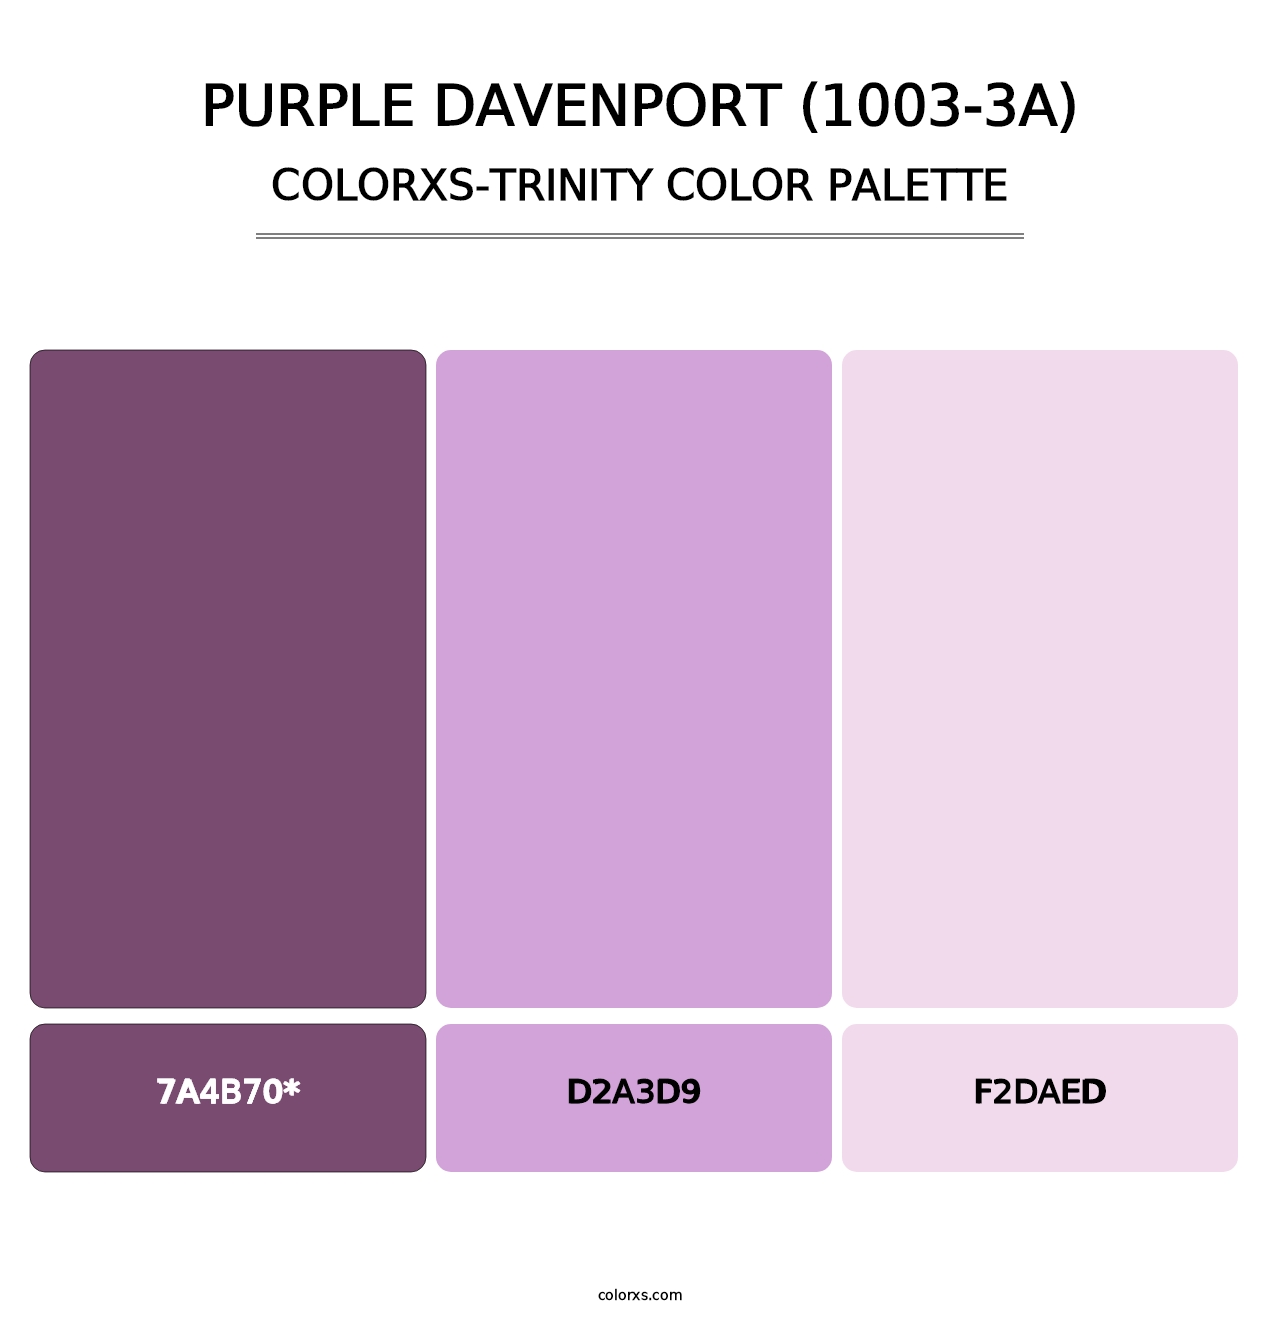 Purple Davenport (1003-3A) - Colorxs Trinity Palette